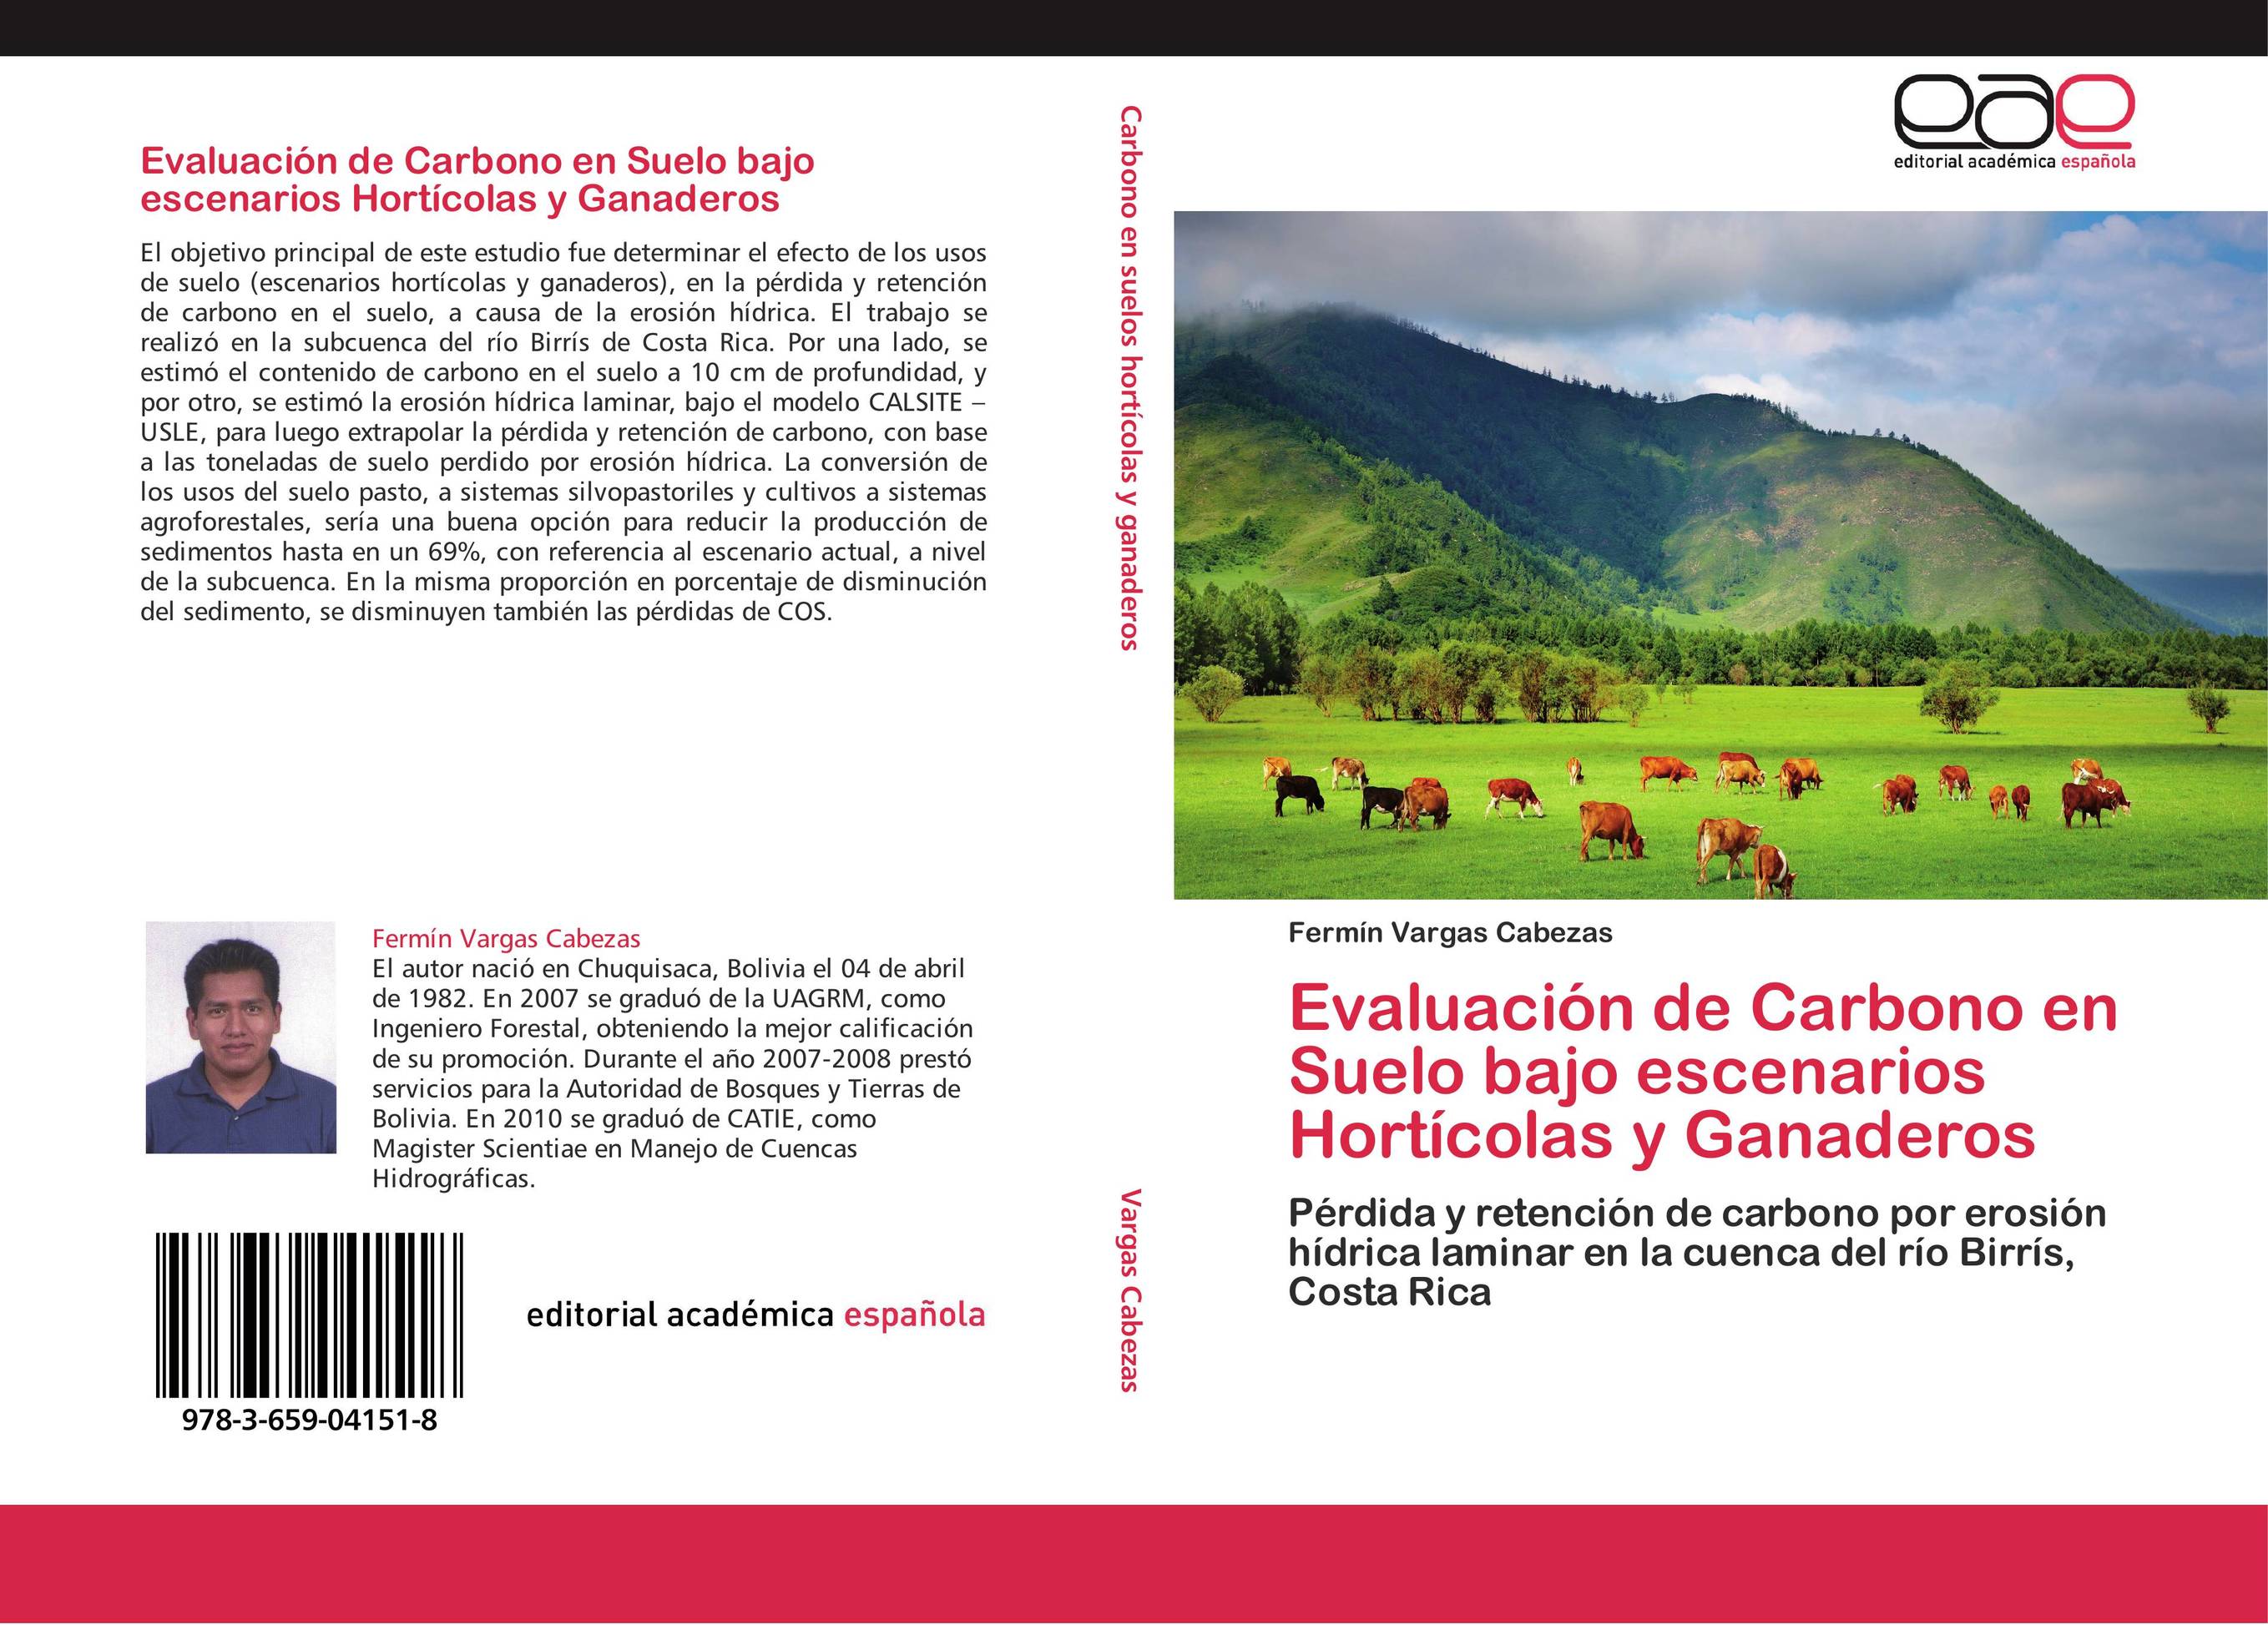 Evaluación de Carbono en Suelo bajo escenarios Hortícolas y Ganaderos